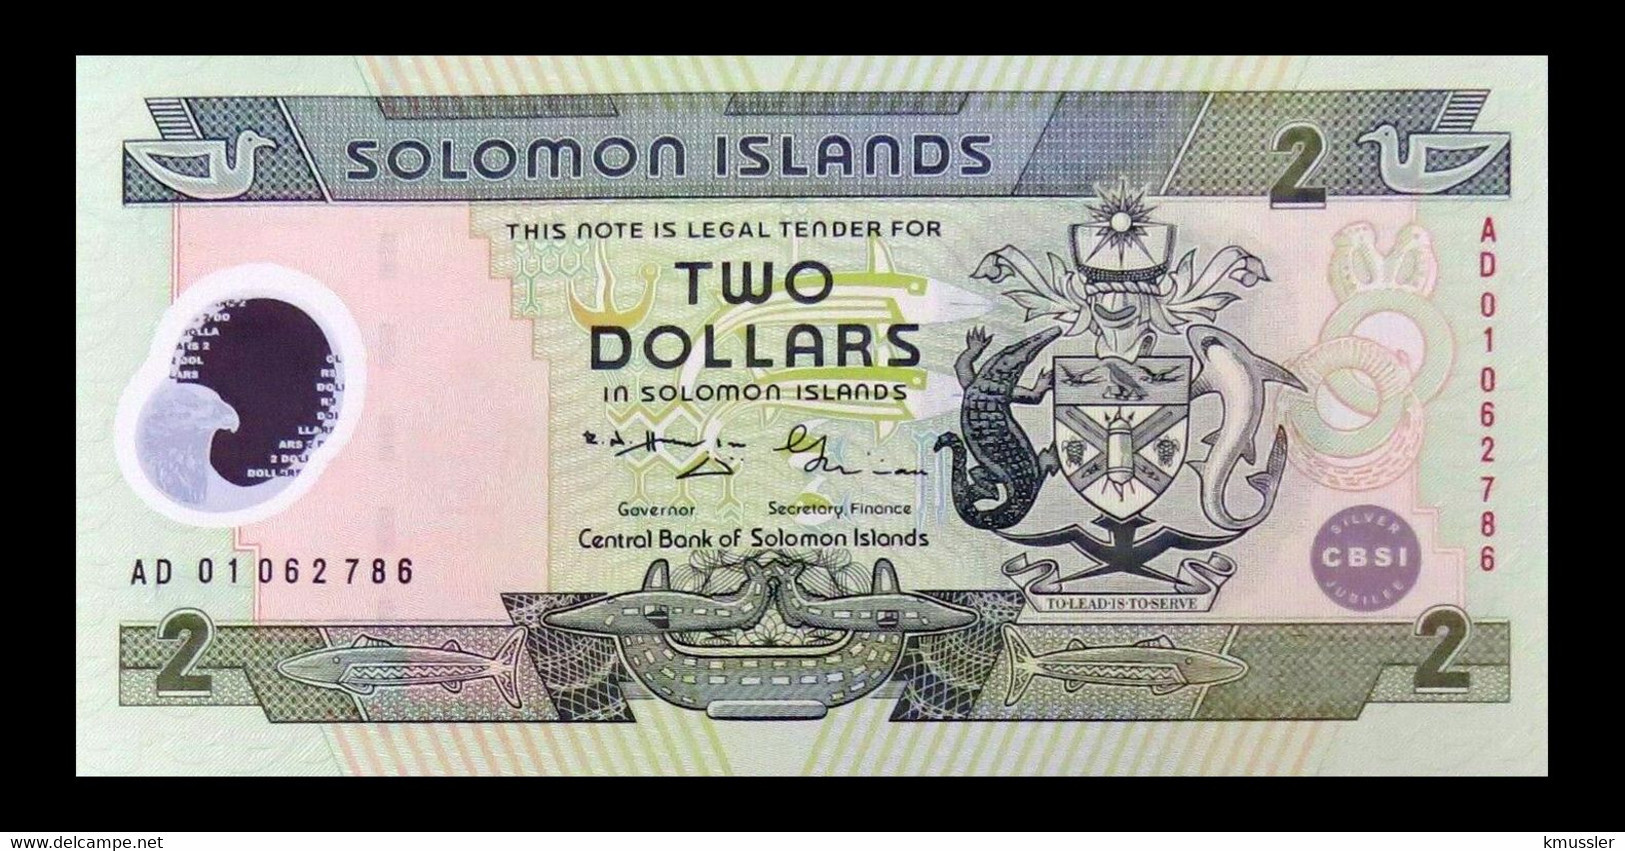 # # # Banknote Von Den Solomon-Inseln 2 Dollars UNC # # # - Salomons